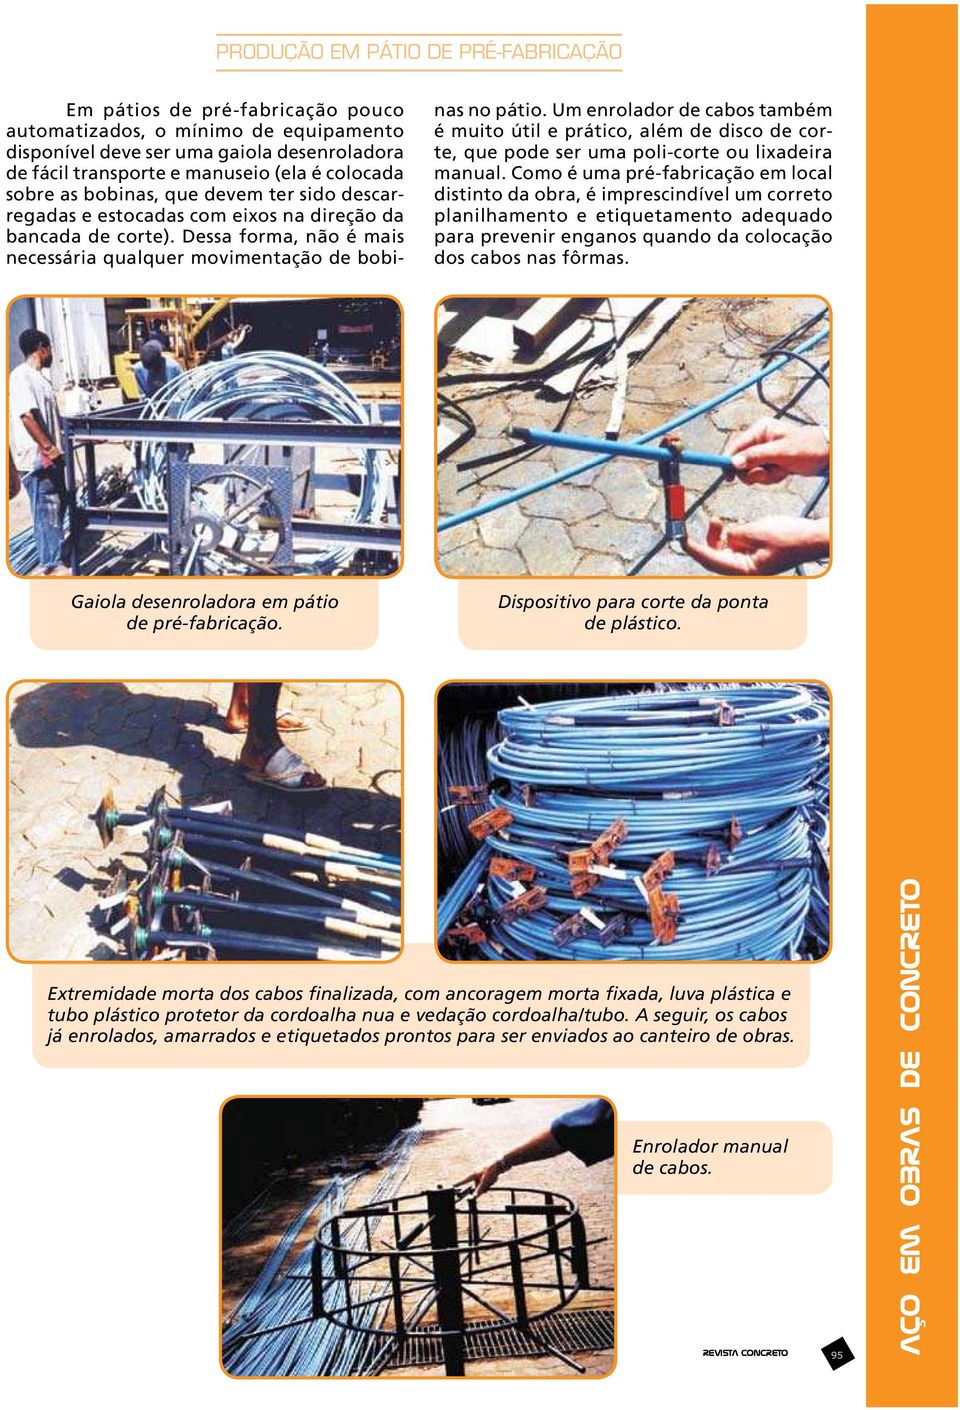 Um enrolador de cabos também é muito útil e prático, além de disco de corte, que pode ser uma poli-corte ou lixadeira manual.